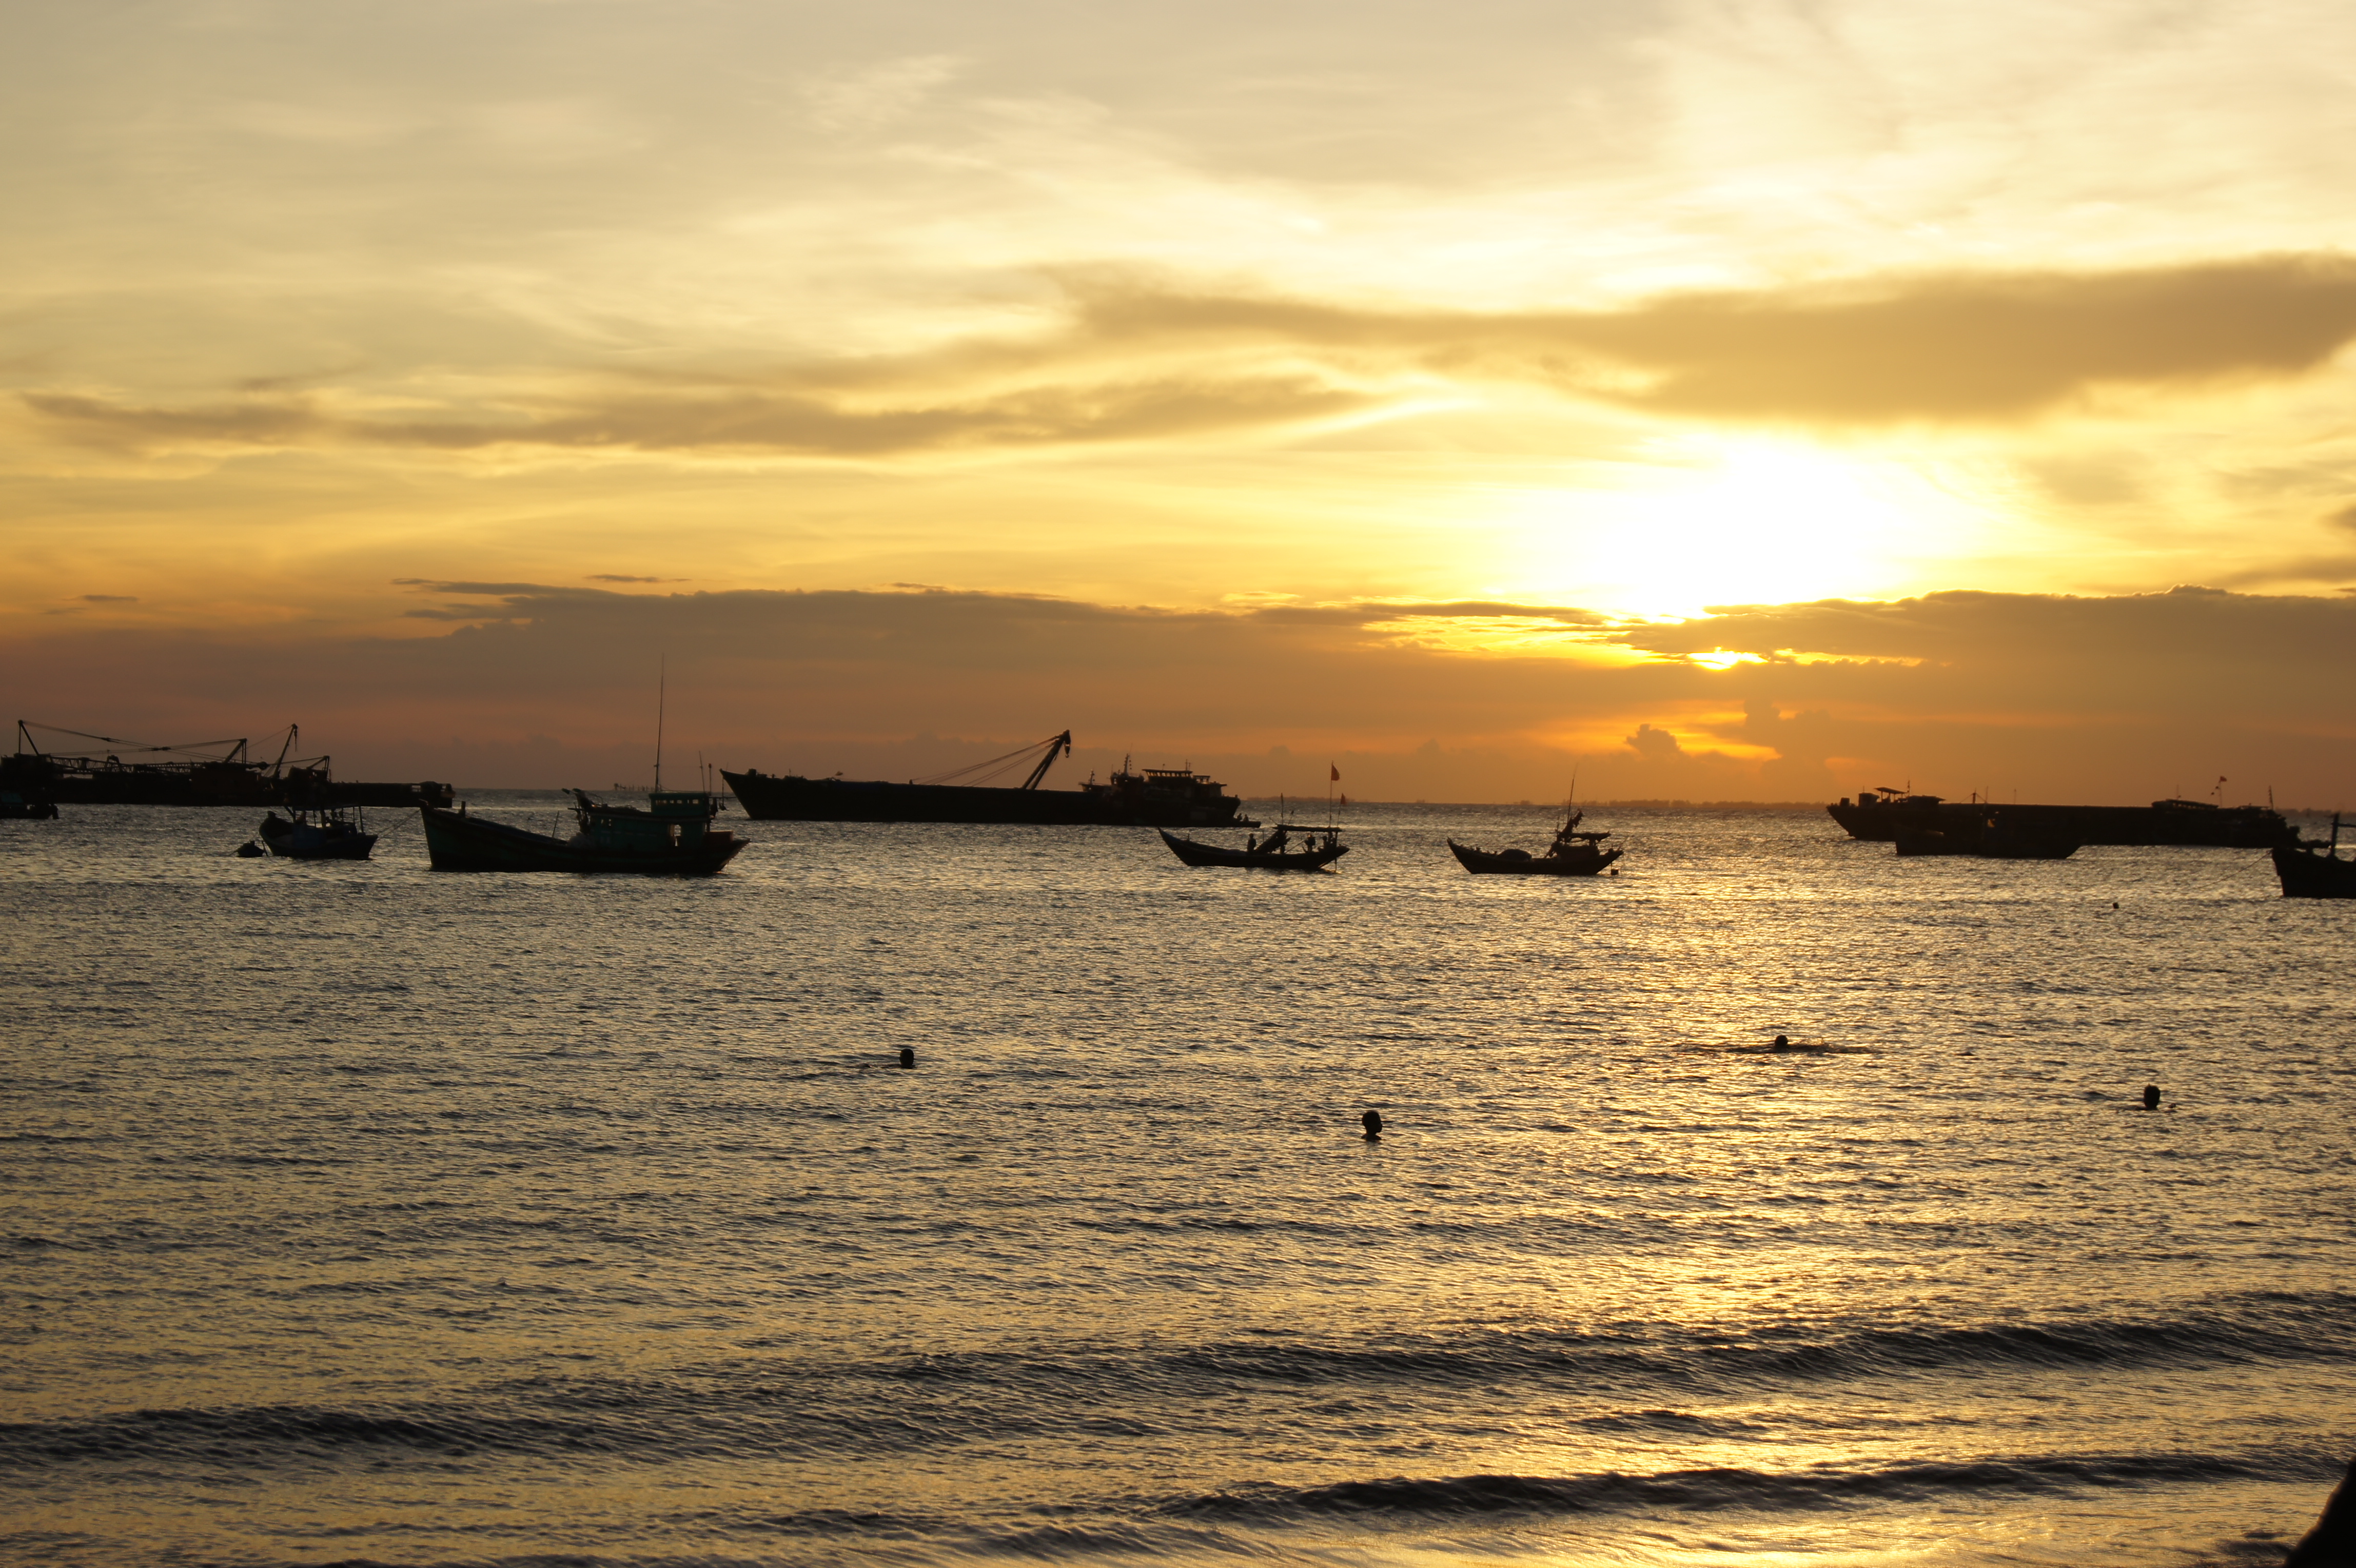 Khám phá Vũng Tàu - một thành phố du lịch biển nổi tiếng trong nước với hệ thống bãi biển tuyệt đẹp và đầy phong cảnh. Cùng xem hình ảnh của Vũng Tàu để tìm thấy sức hút của nó!